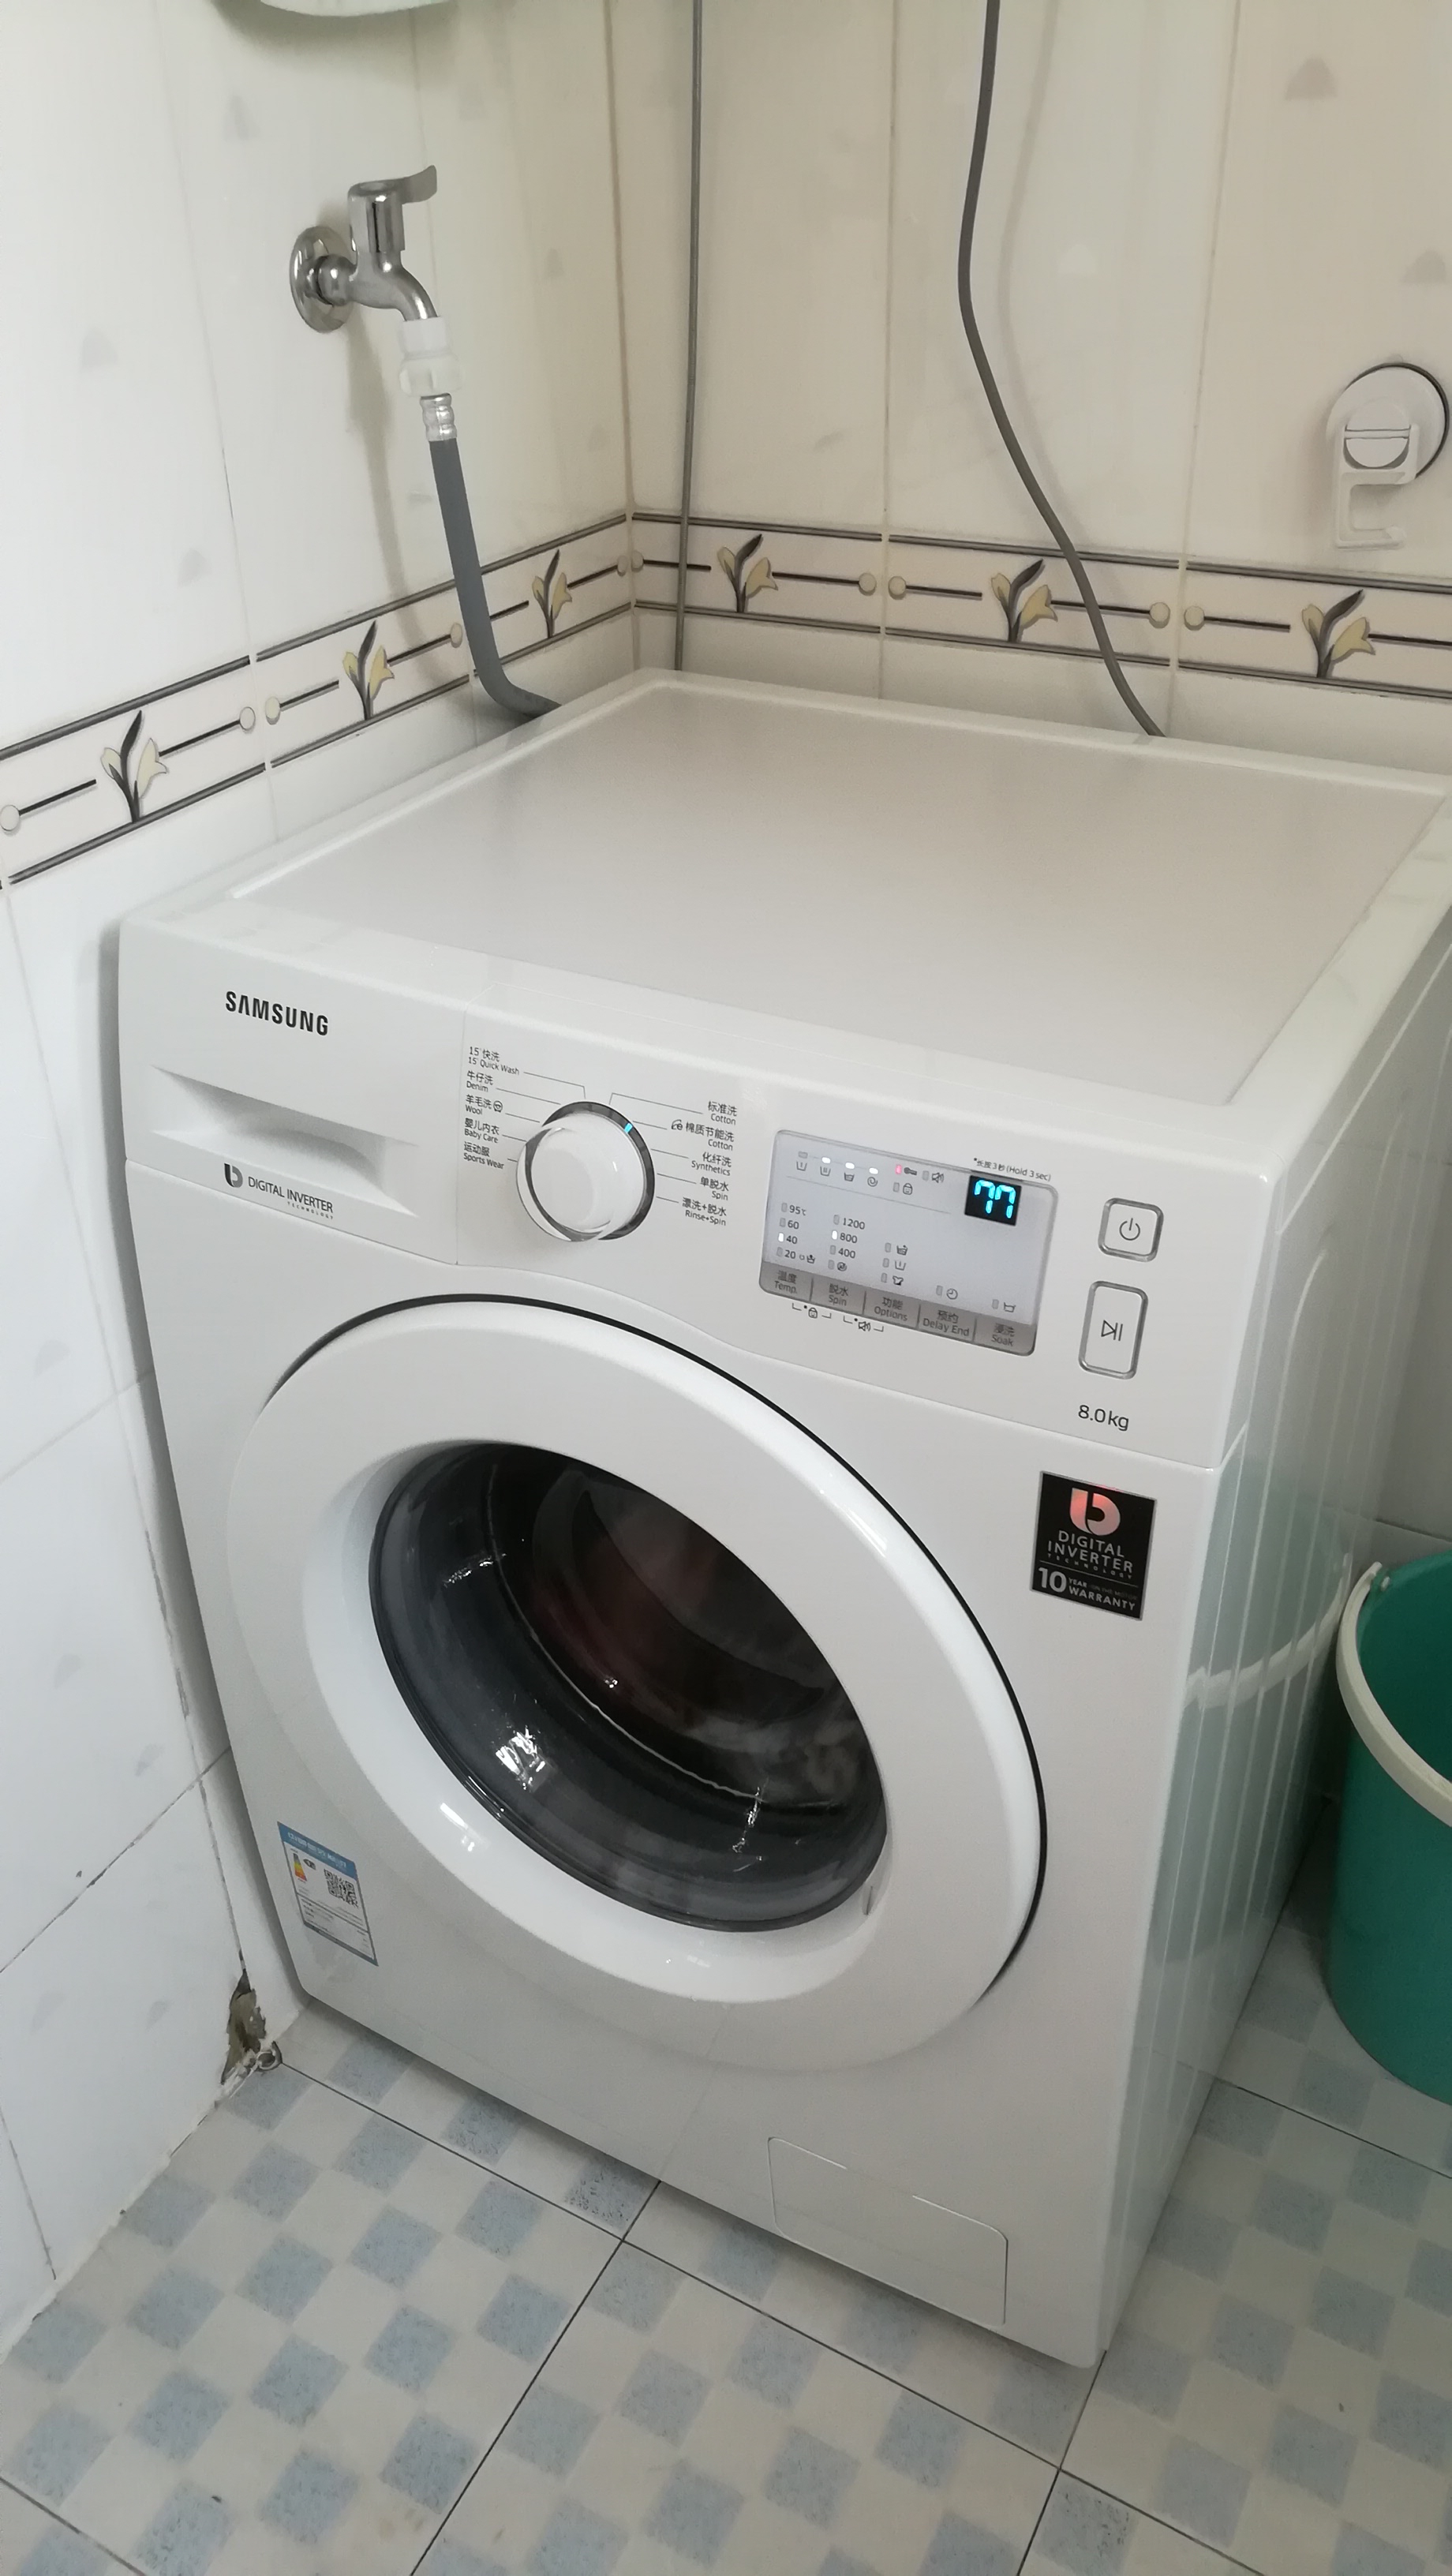 3、滚筒洗衣机的安装方法：滚筒洗衣机的安装步骤